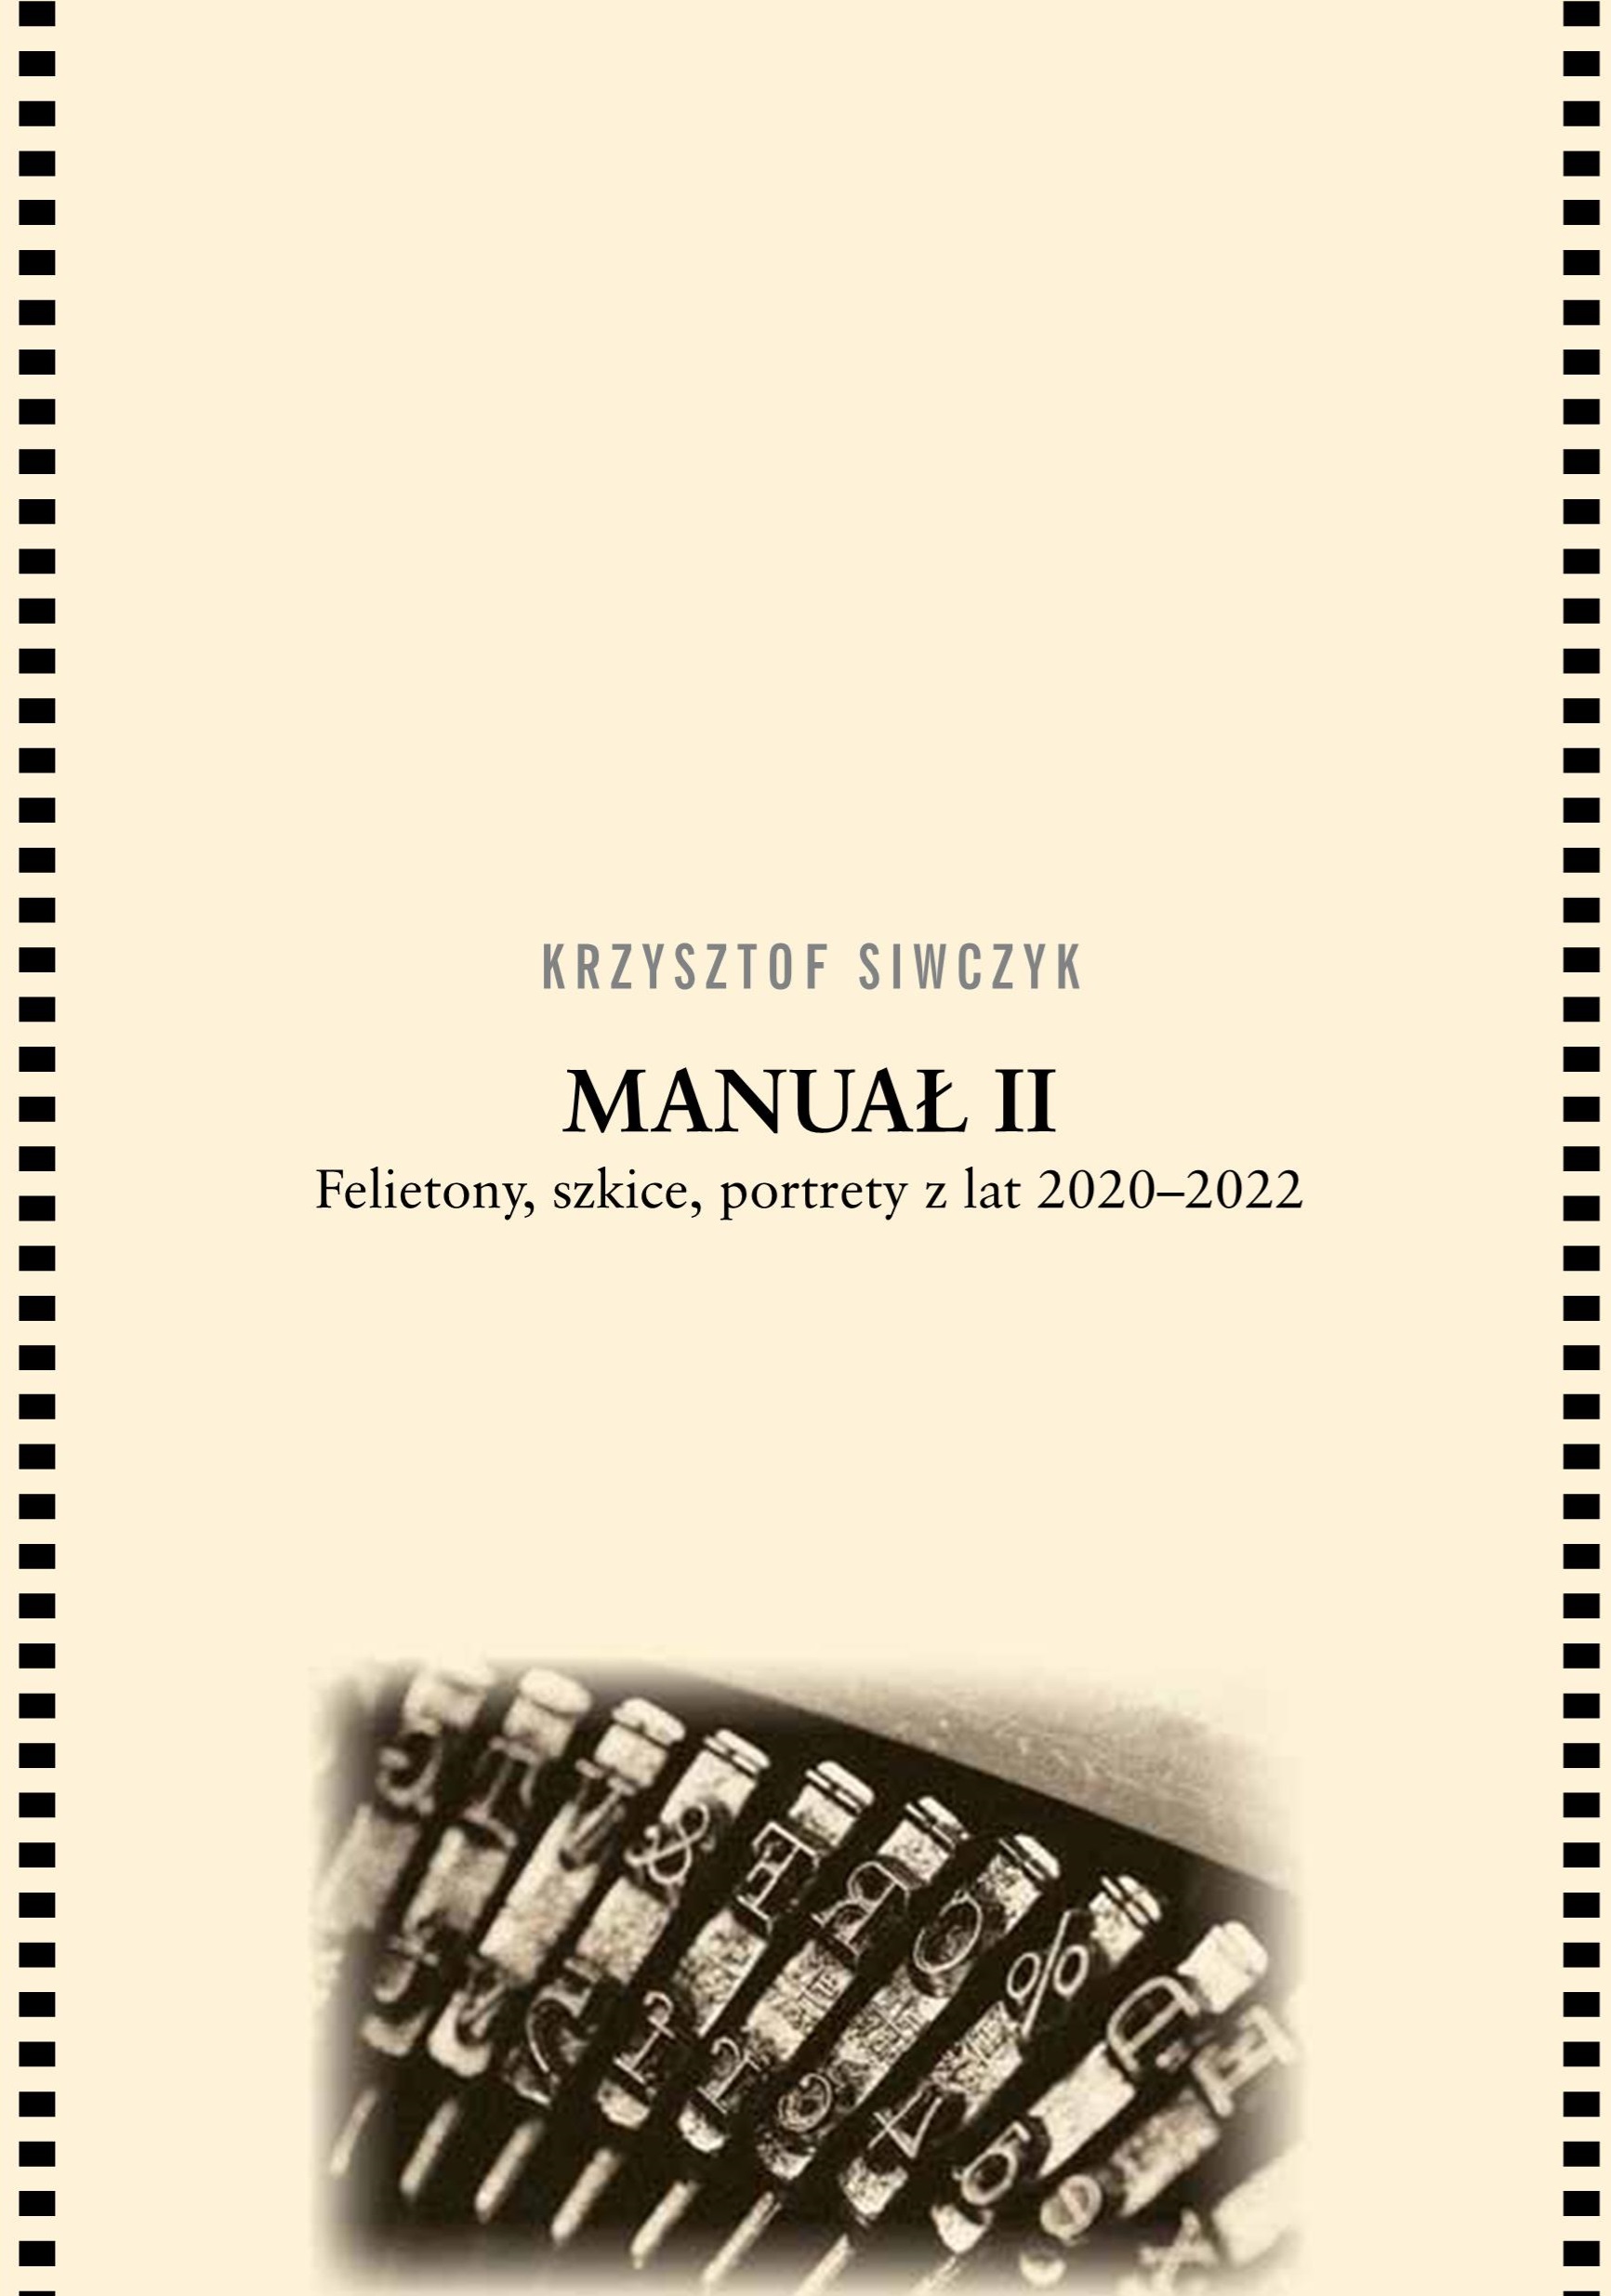 Okładka książki Krzysztofa Siwczyka pt. Manuał II. Felietony, szkice, portrety z lat 2020-2022.na okładce fragment zdjęcia maszyny do pisania